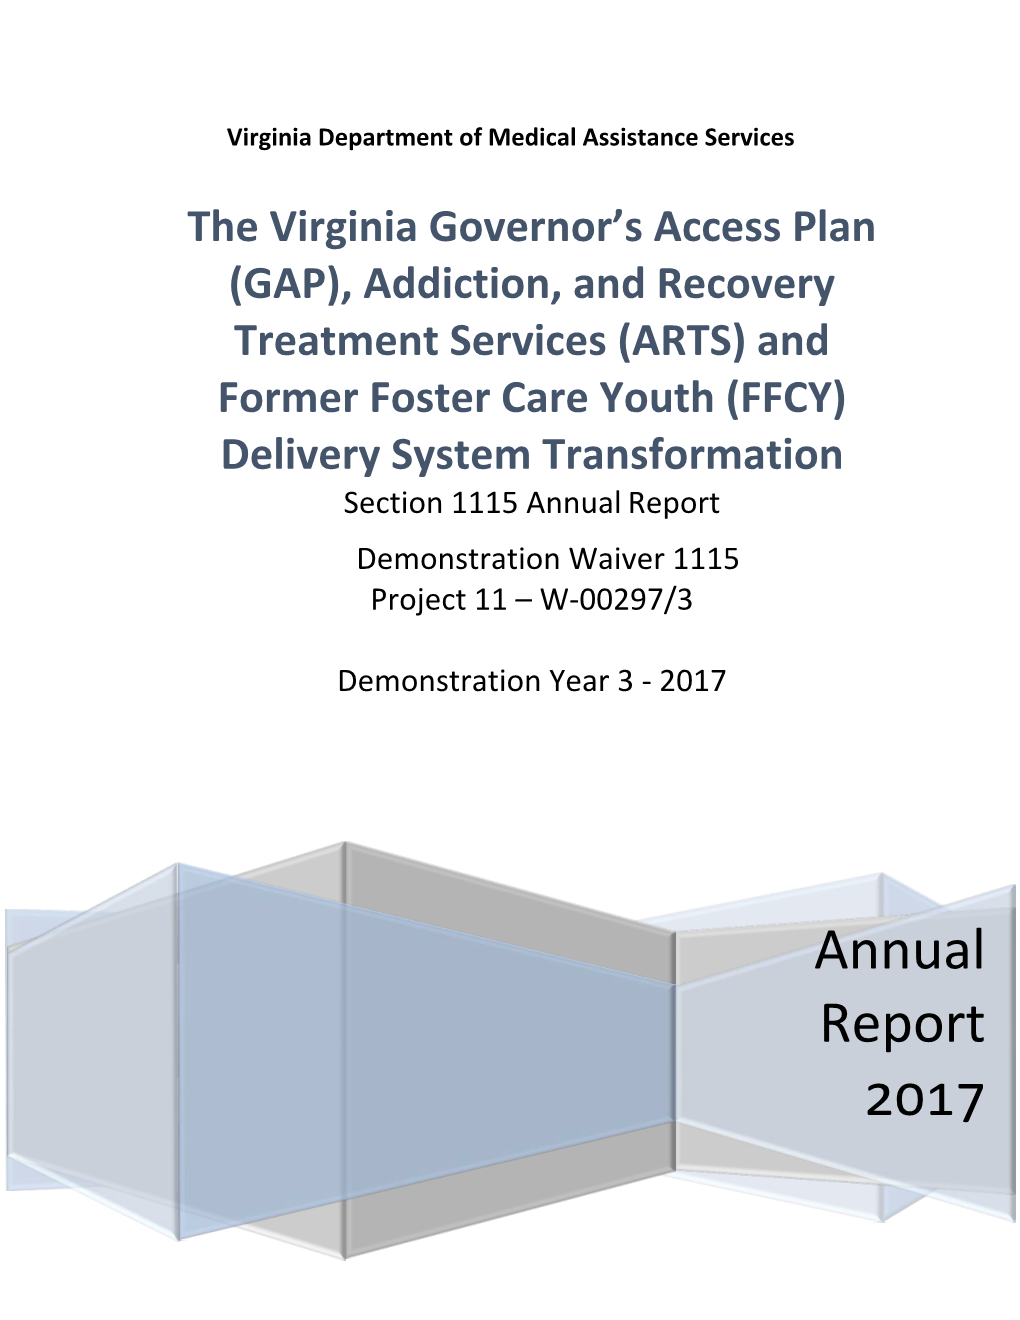 The Virginia Governor's Access Plan (GAP)